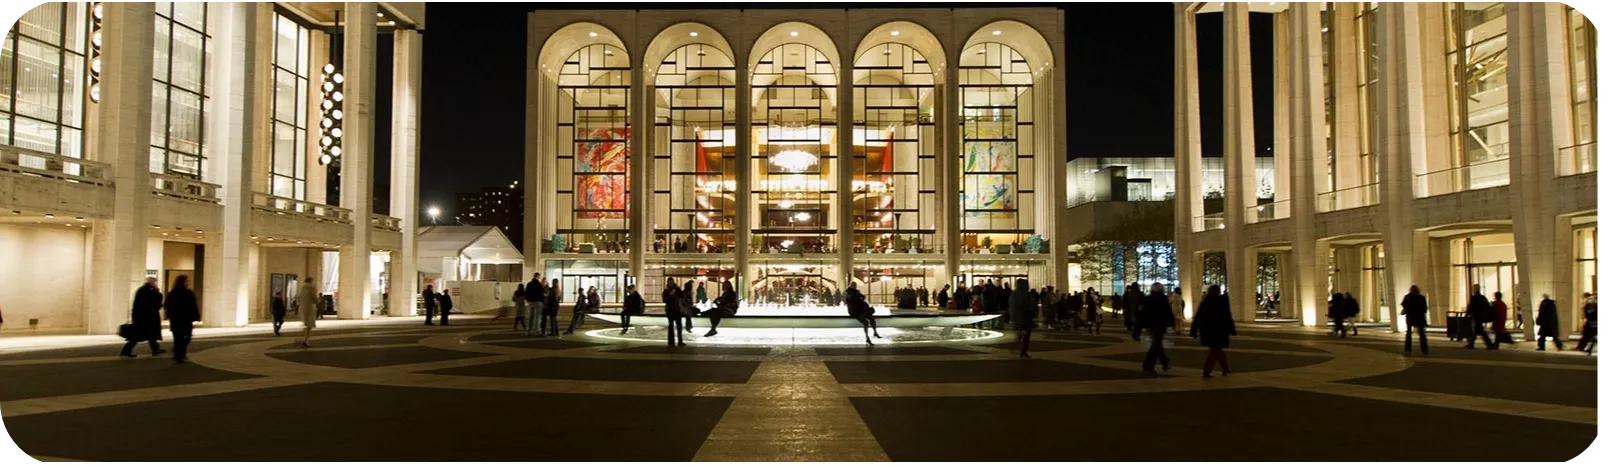 Metropolitan Opera House - Lincoln Center Tickets